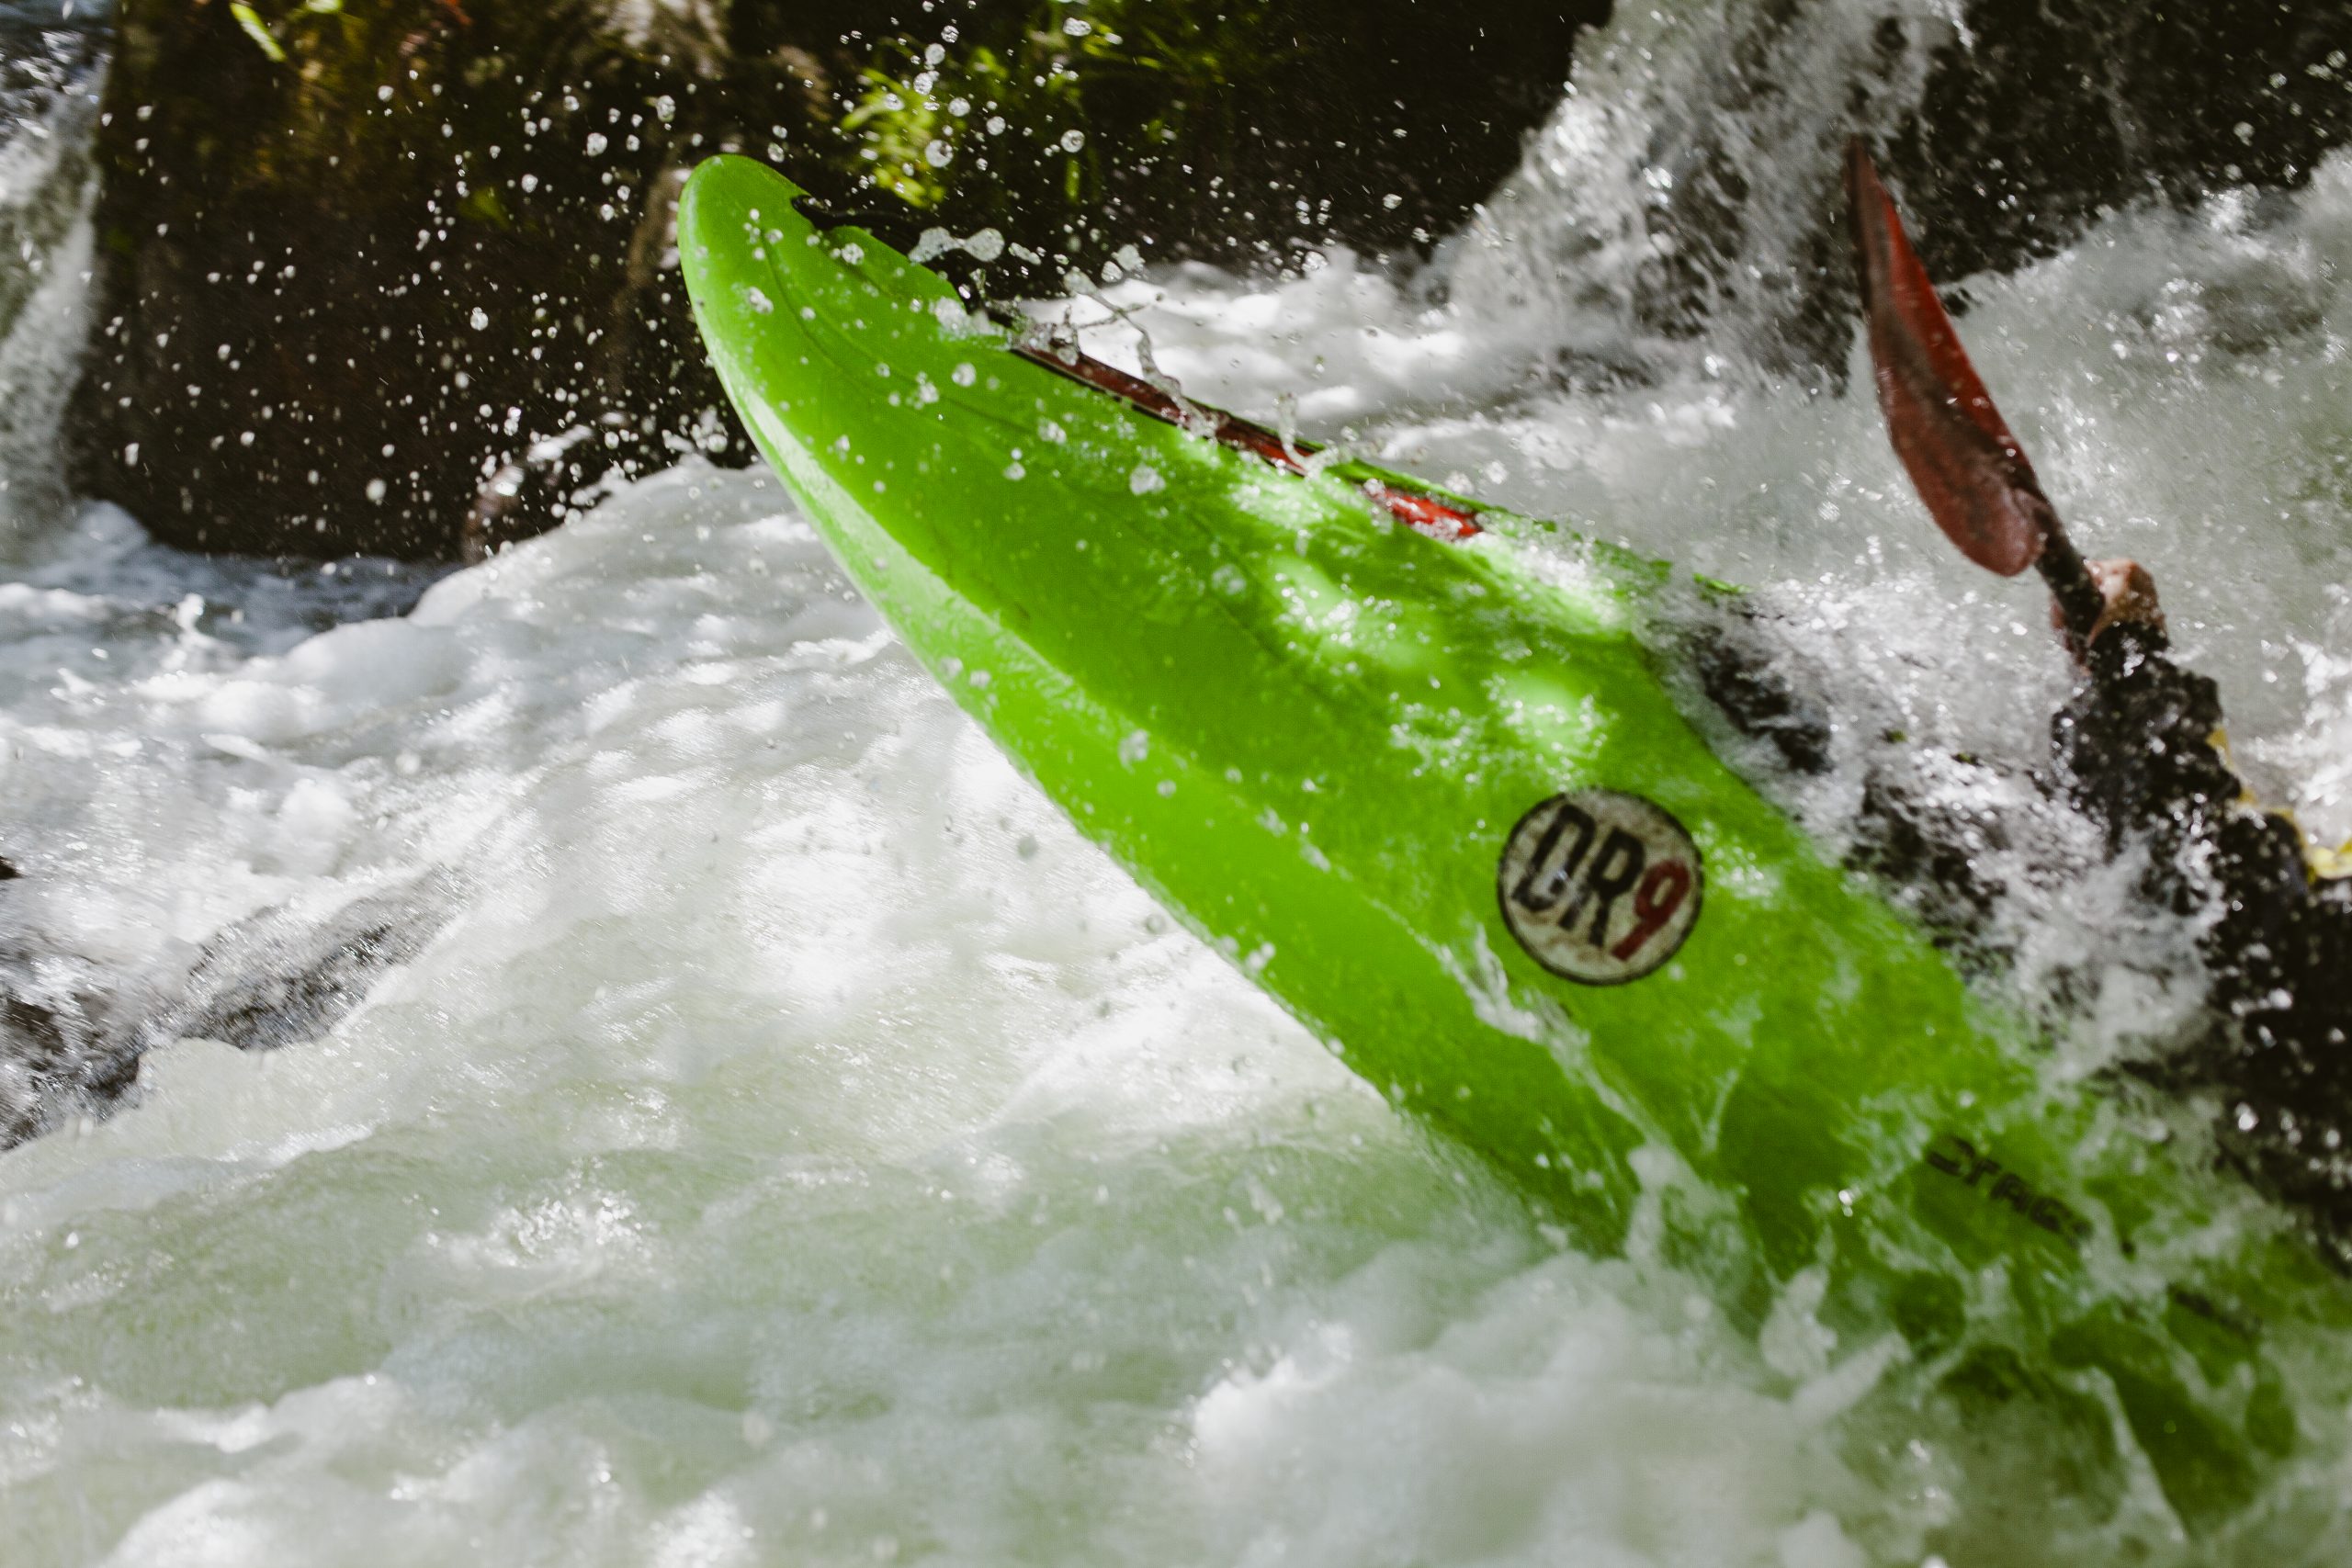 Saliendo de Las fuentes. Río Piqueras. Descenso en piragua. XX competición de Kayak extremo. 24 de julio de 2022.
© Juan San Sebastián. Todos los derechos reservados.